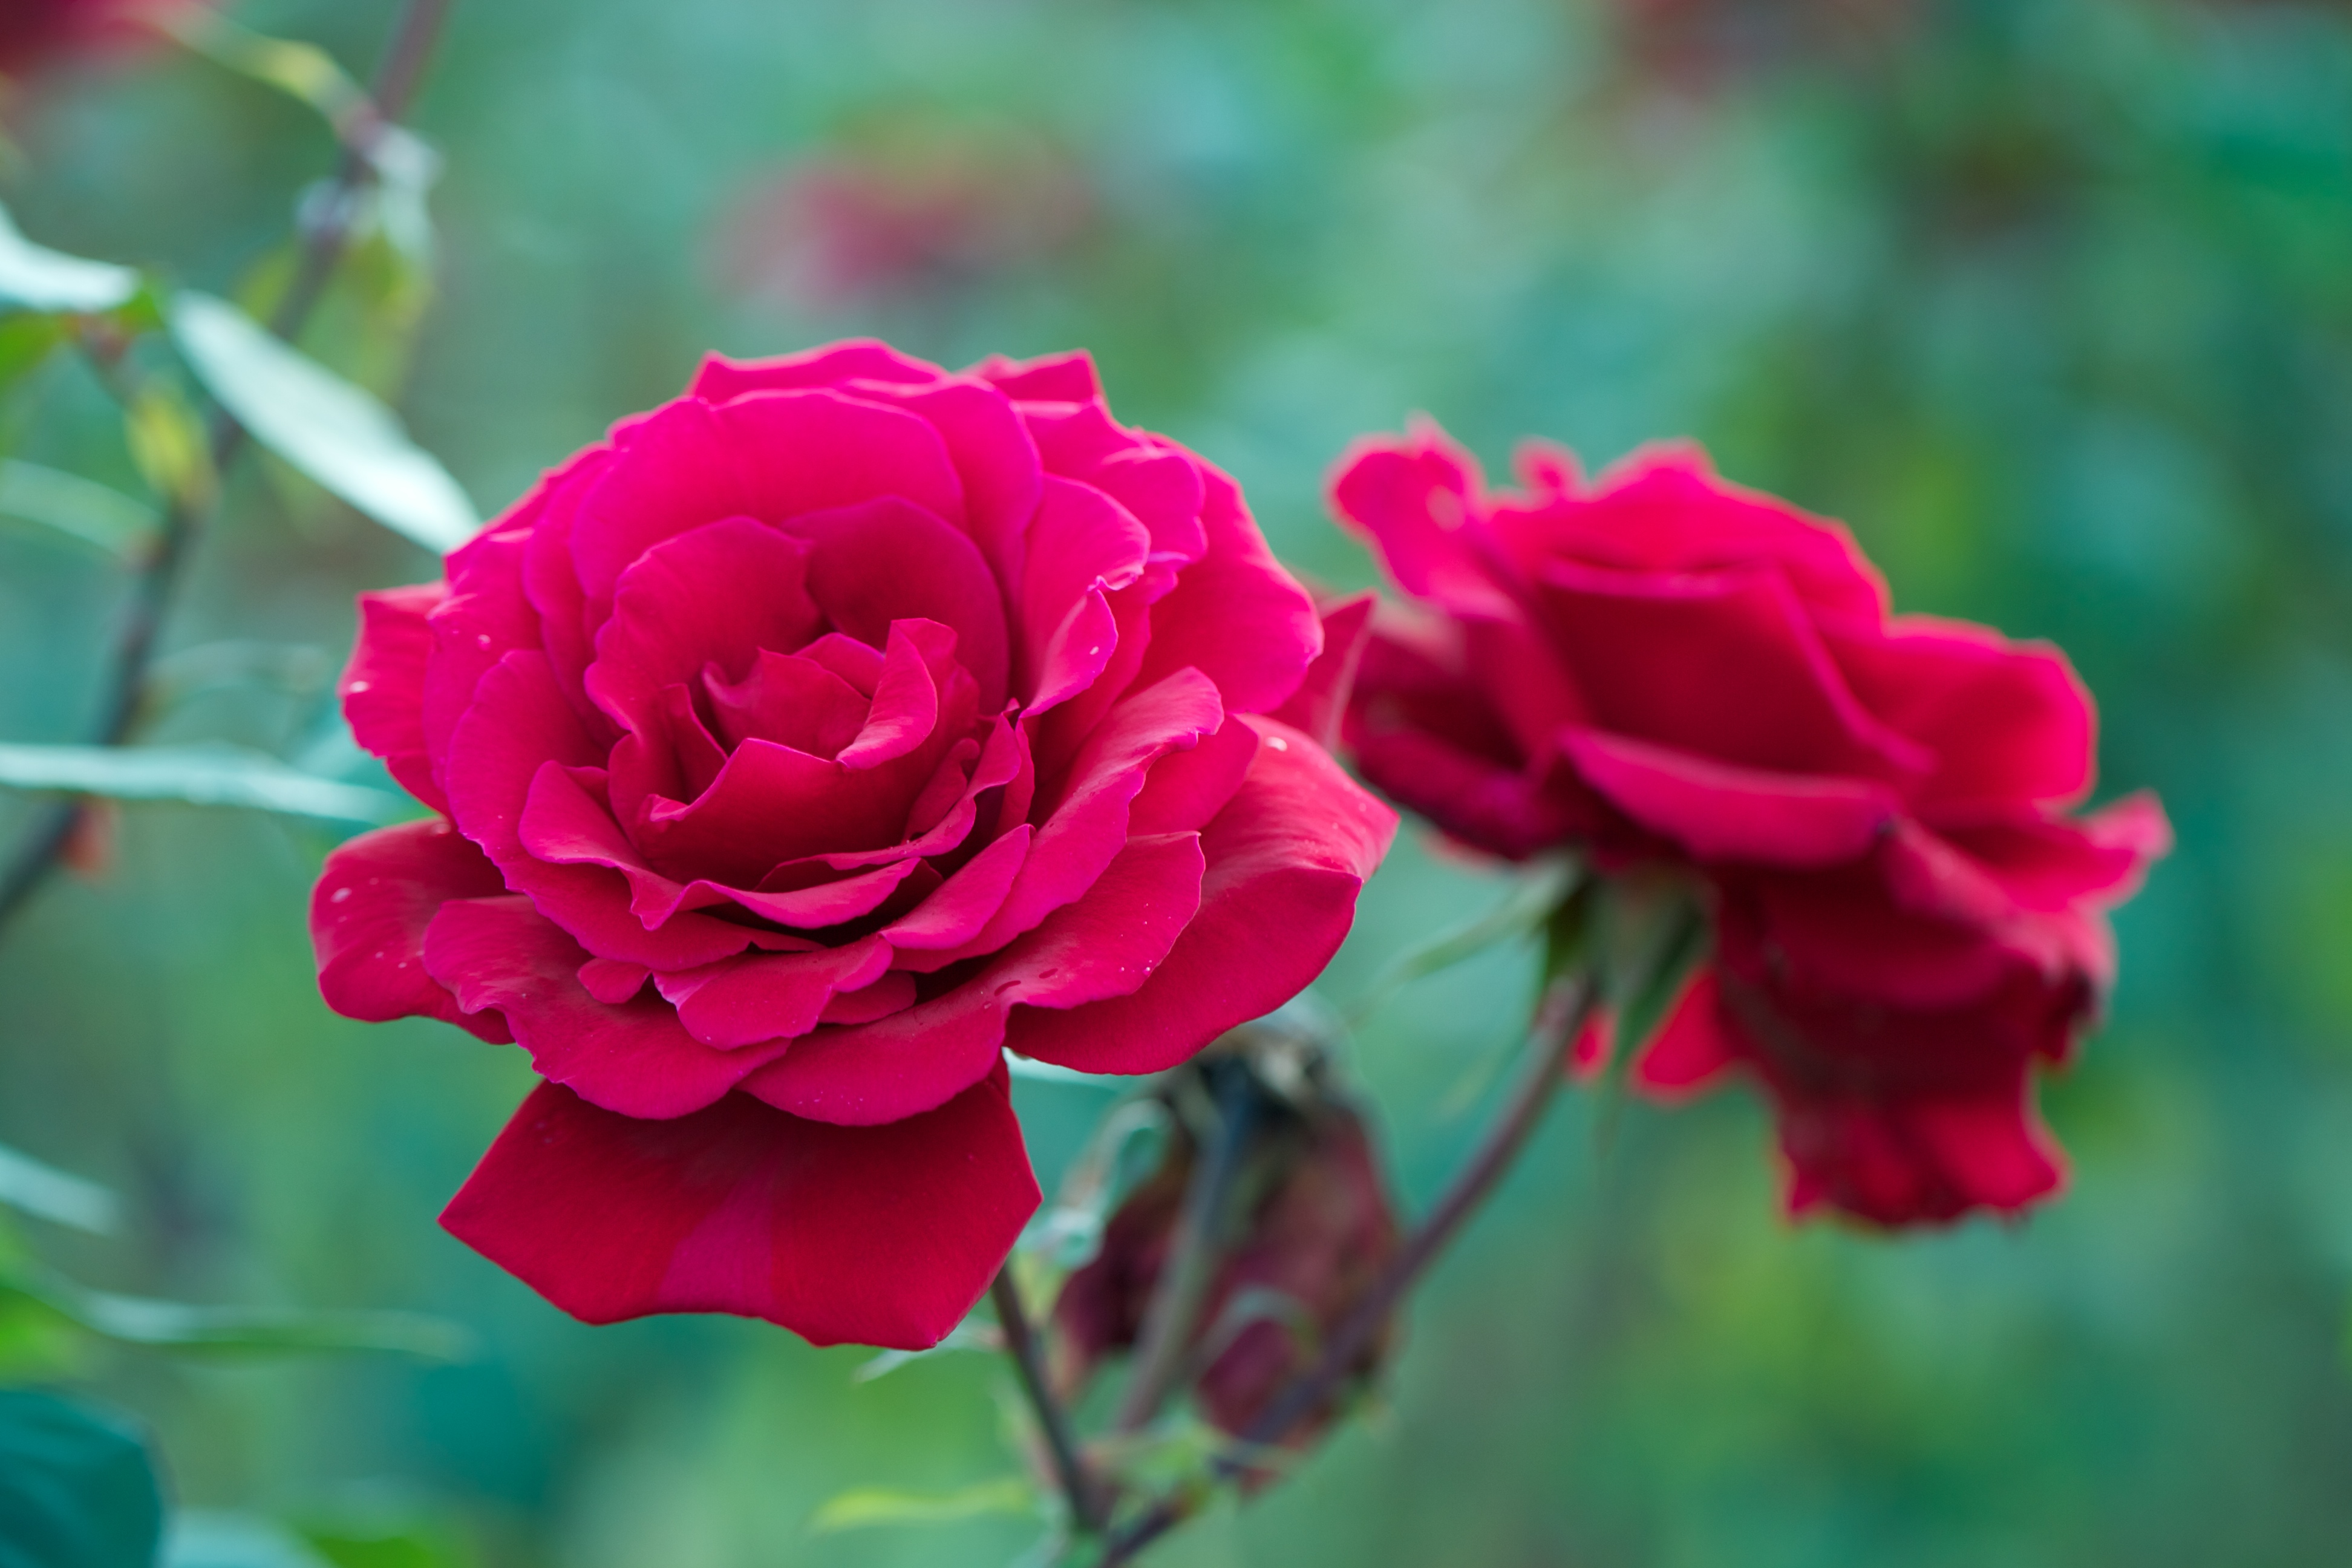 Скачать обои бесплатно Природа, Цветок, Роза, Весна, Красная Роза, Красный Цветок, Земля/природа, Флауэрсы картинка на рабочий стол ПК